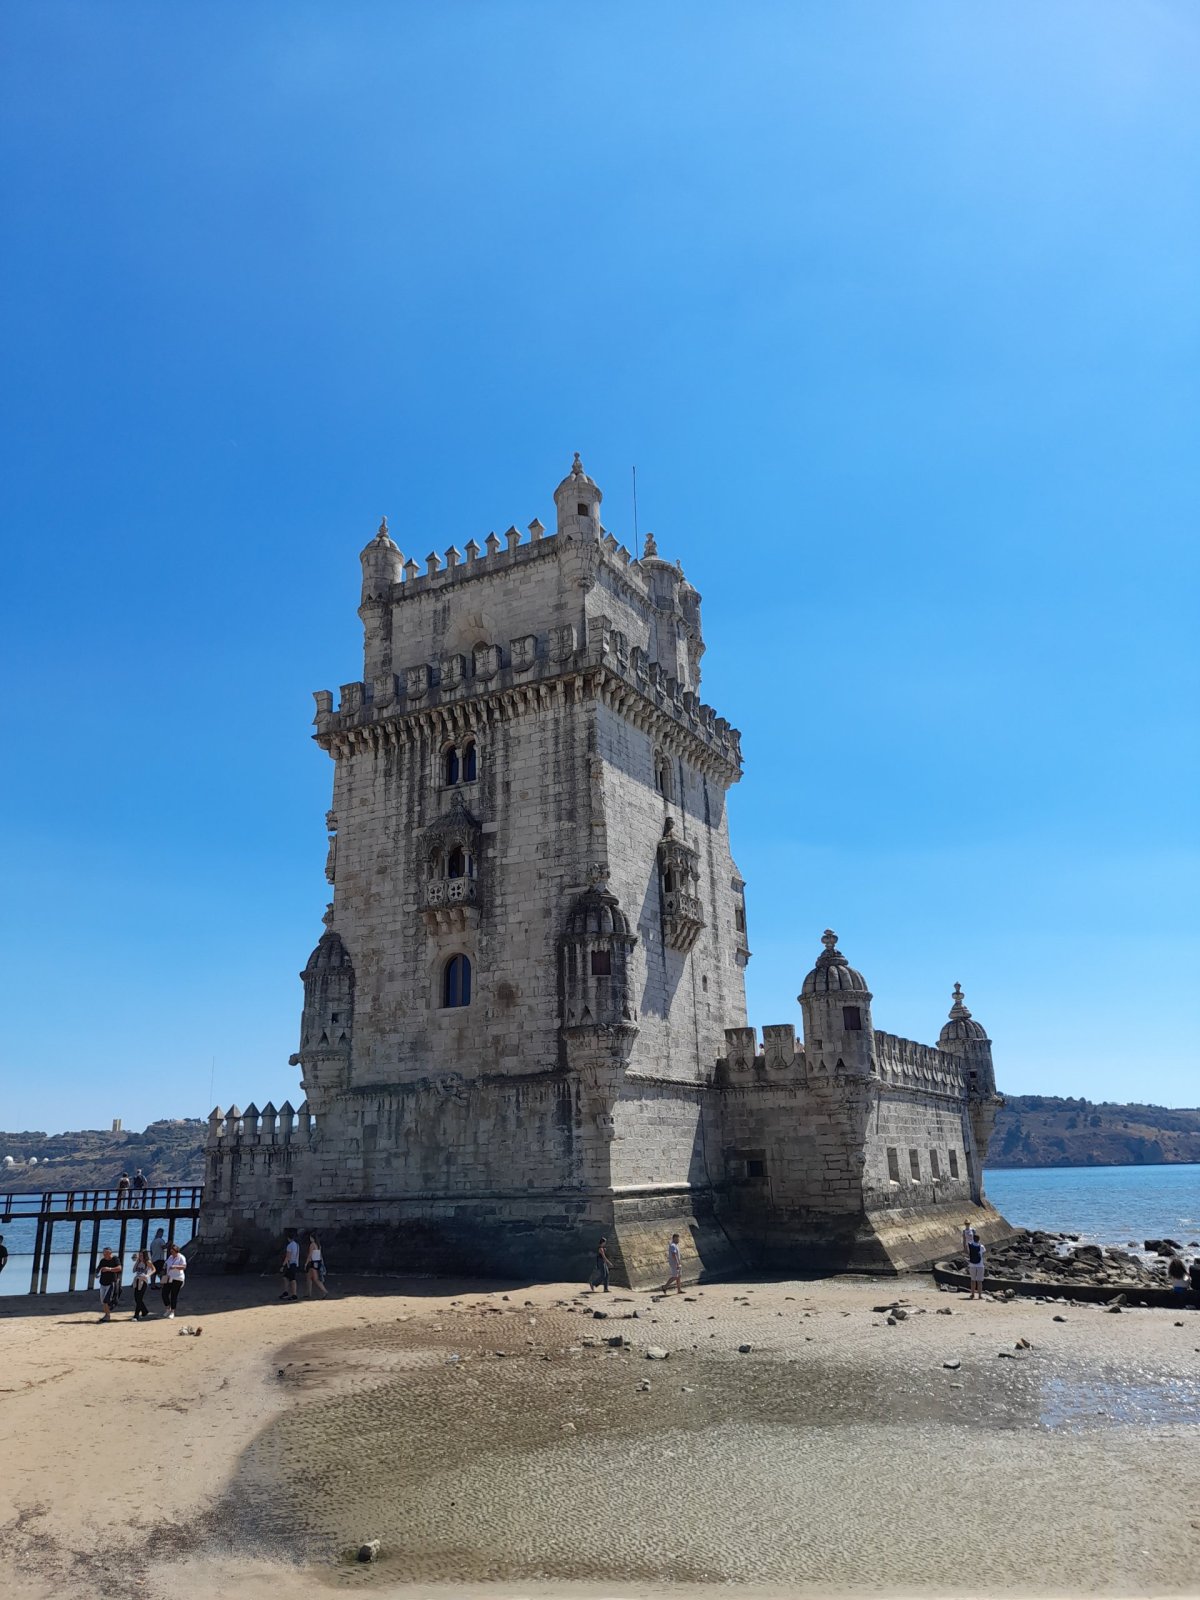 Belémská věž